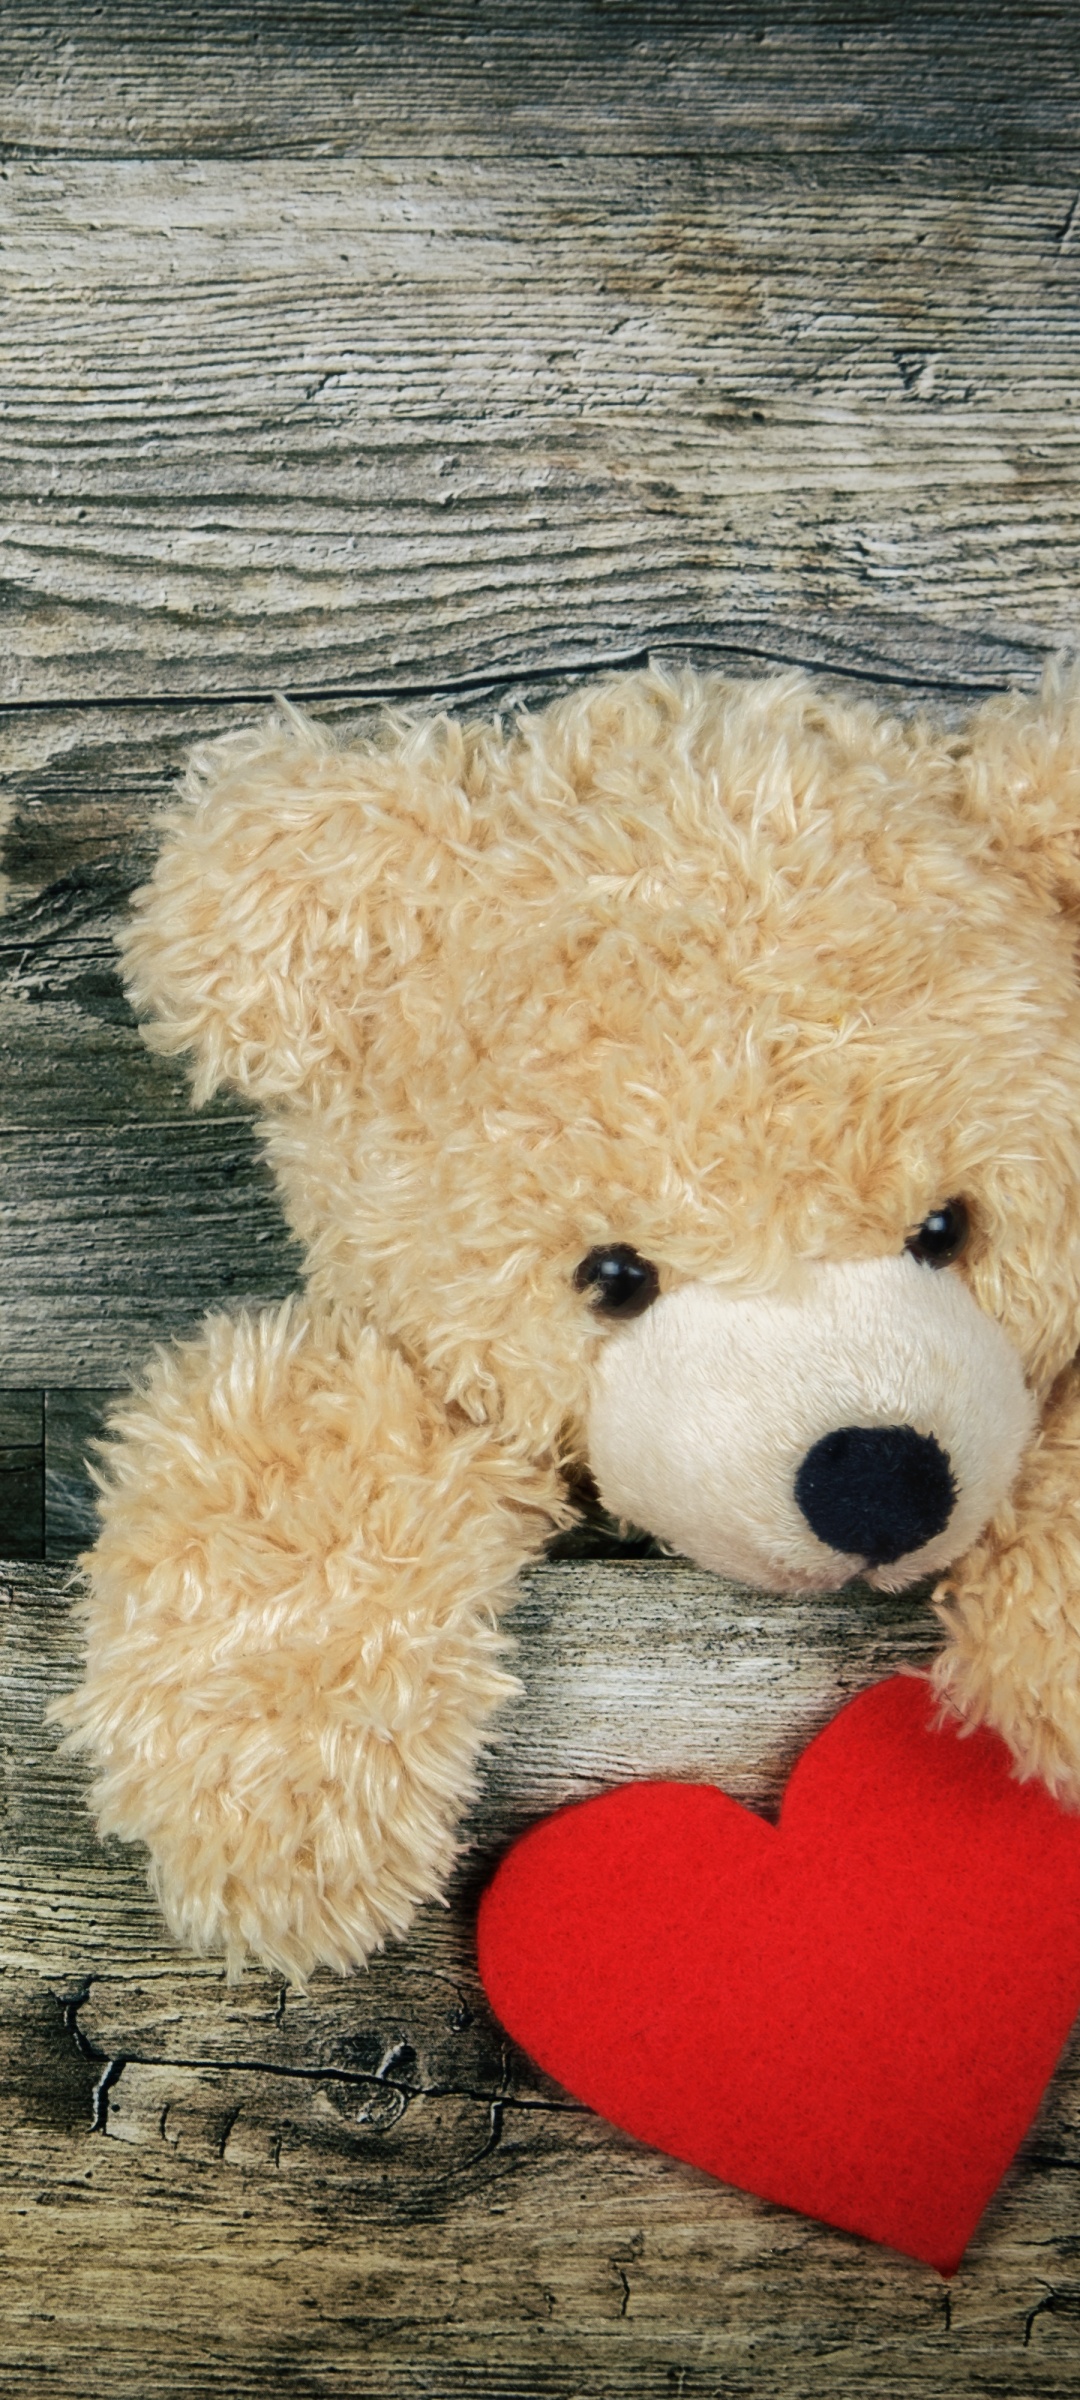 Teddy bear Wallpaper 4K, Red heart, Wooden background, Soft toy, Stuffed, Cute